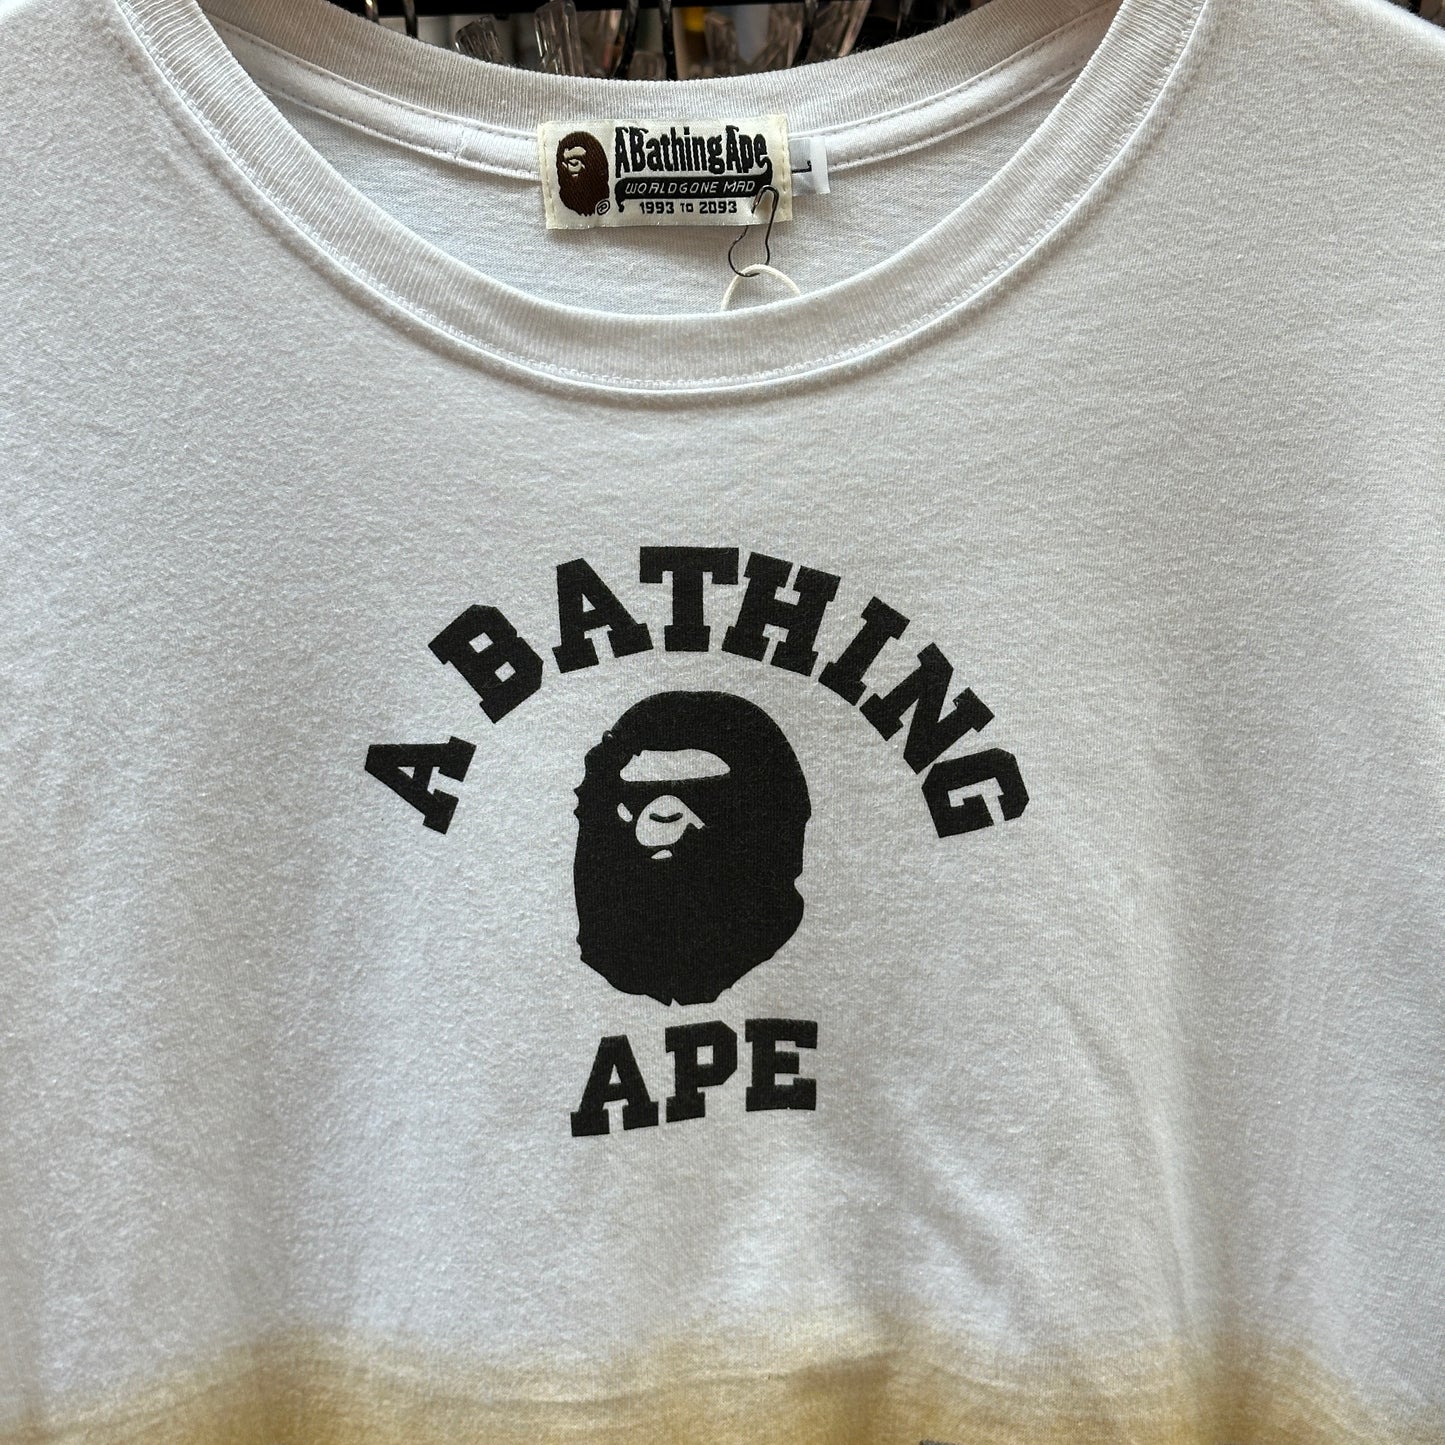 A Bathing Ape Camo T-shirt